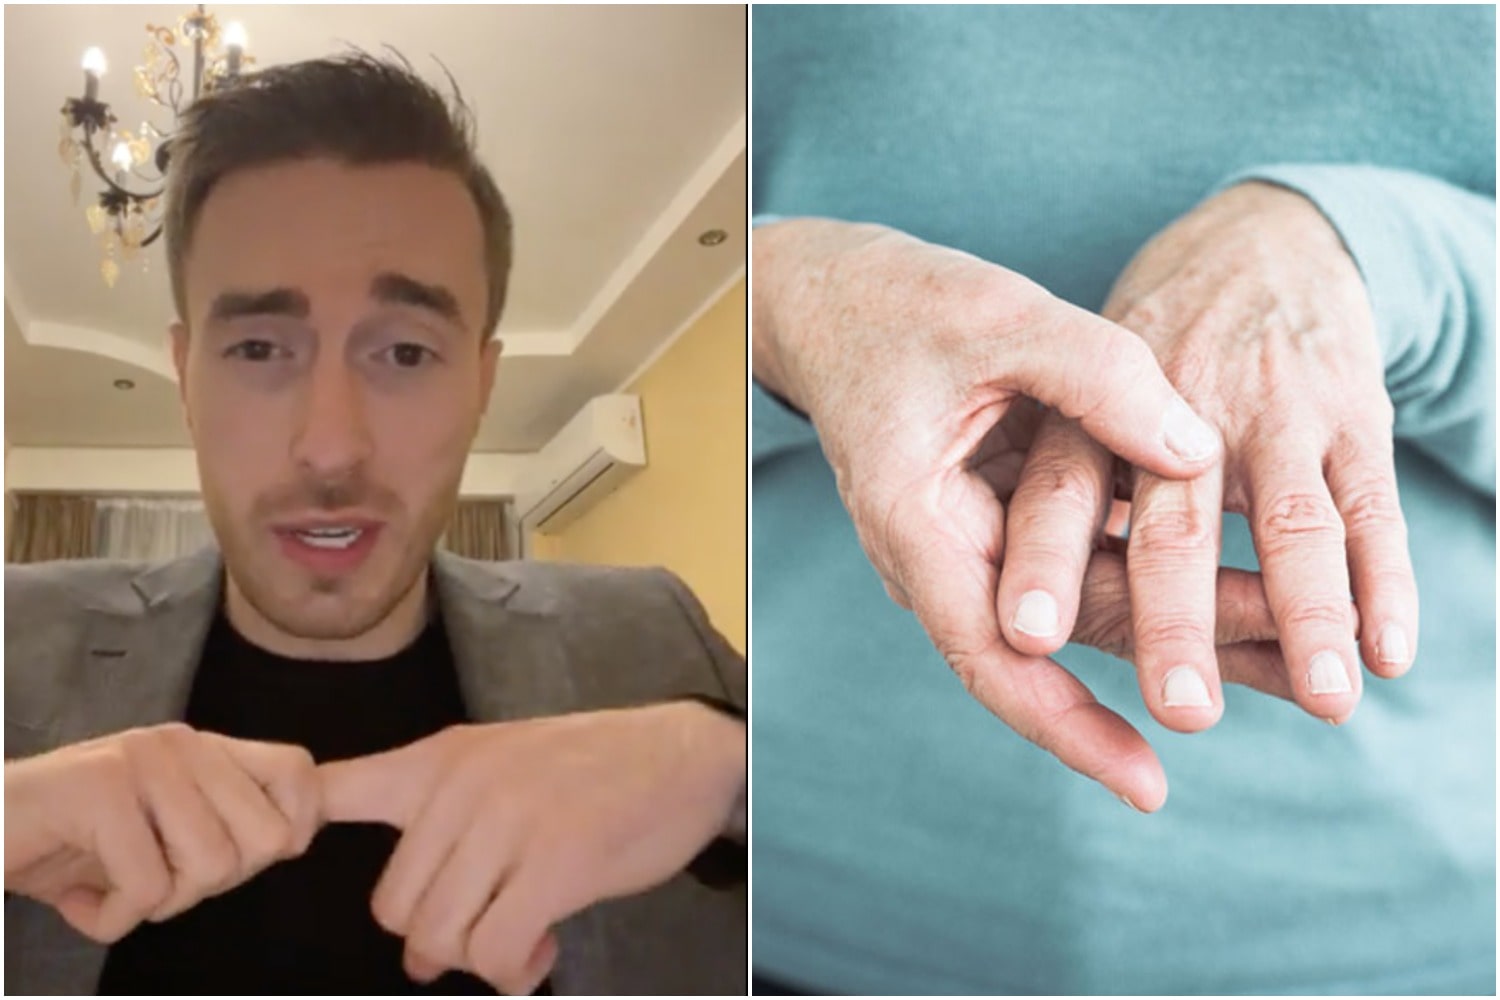 ზიანდება თუ არა თითების ტკაცუნის დროს ძვალი, ხრტილი ან მყესები? - საინტერესო თემაზე გიორგი ღოღობერიძე საუბრობს